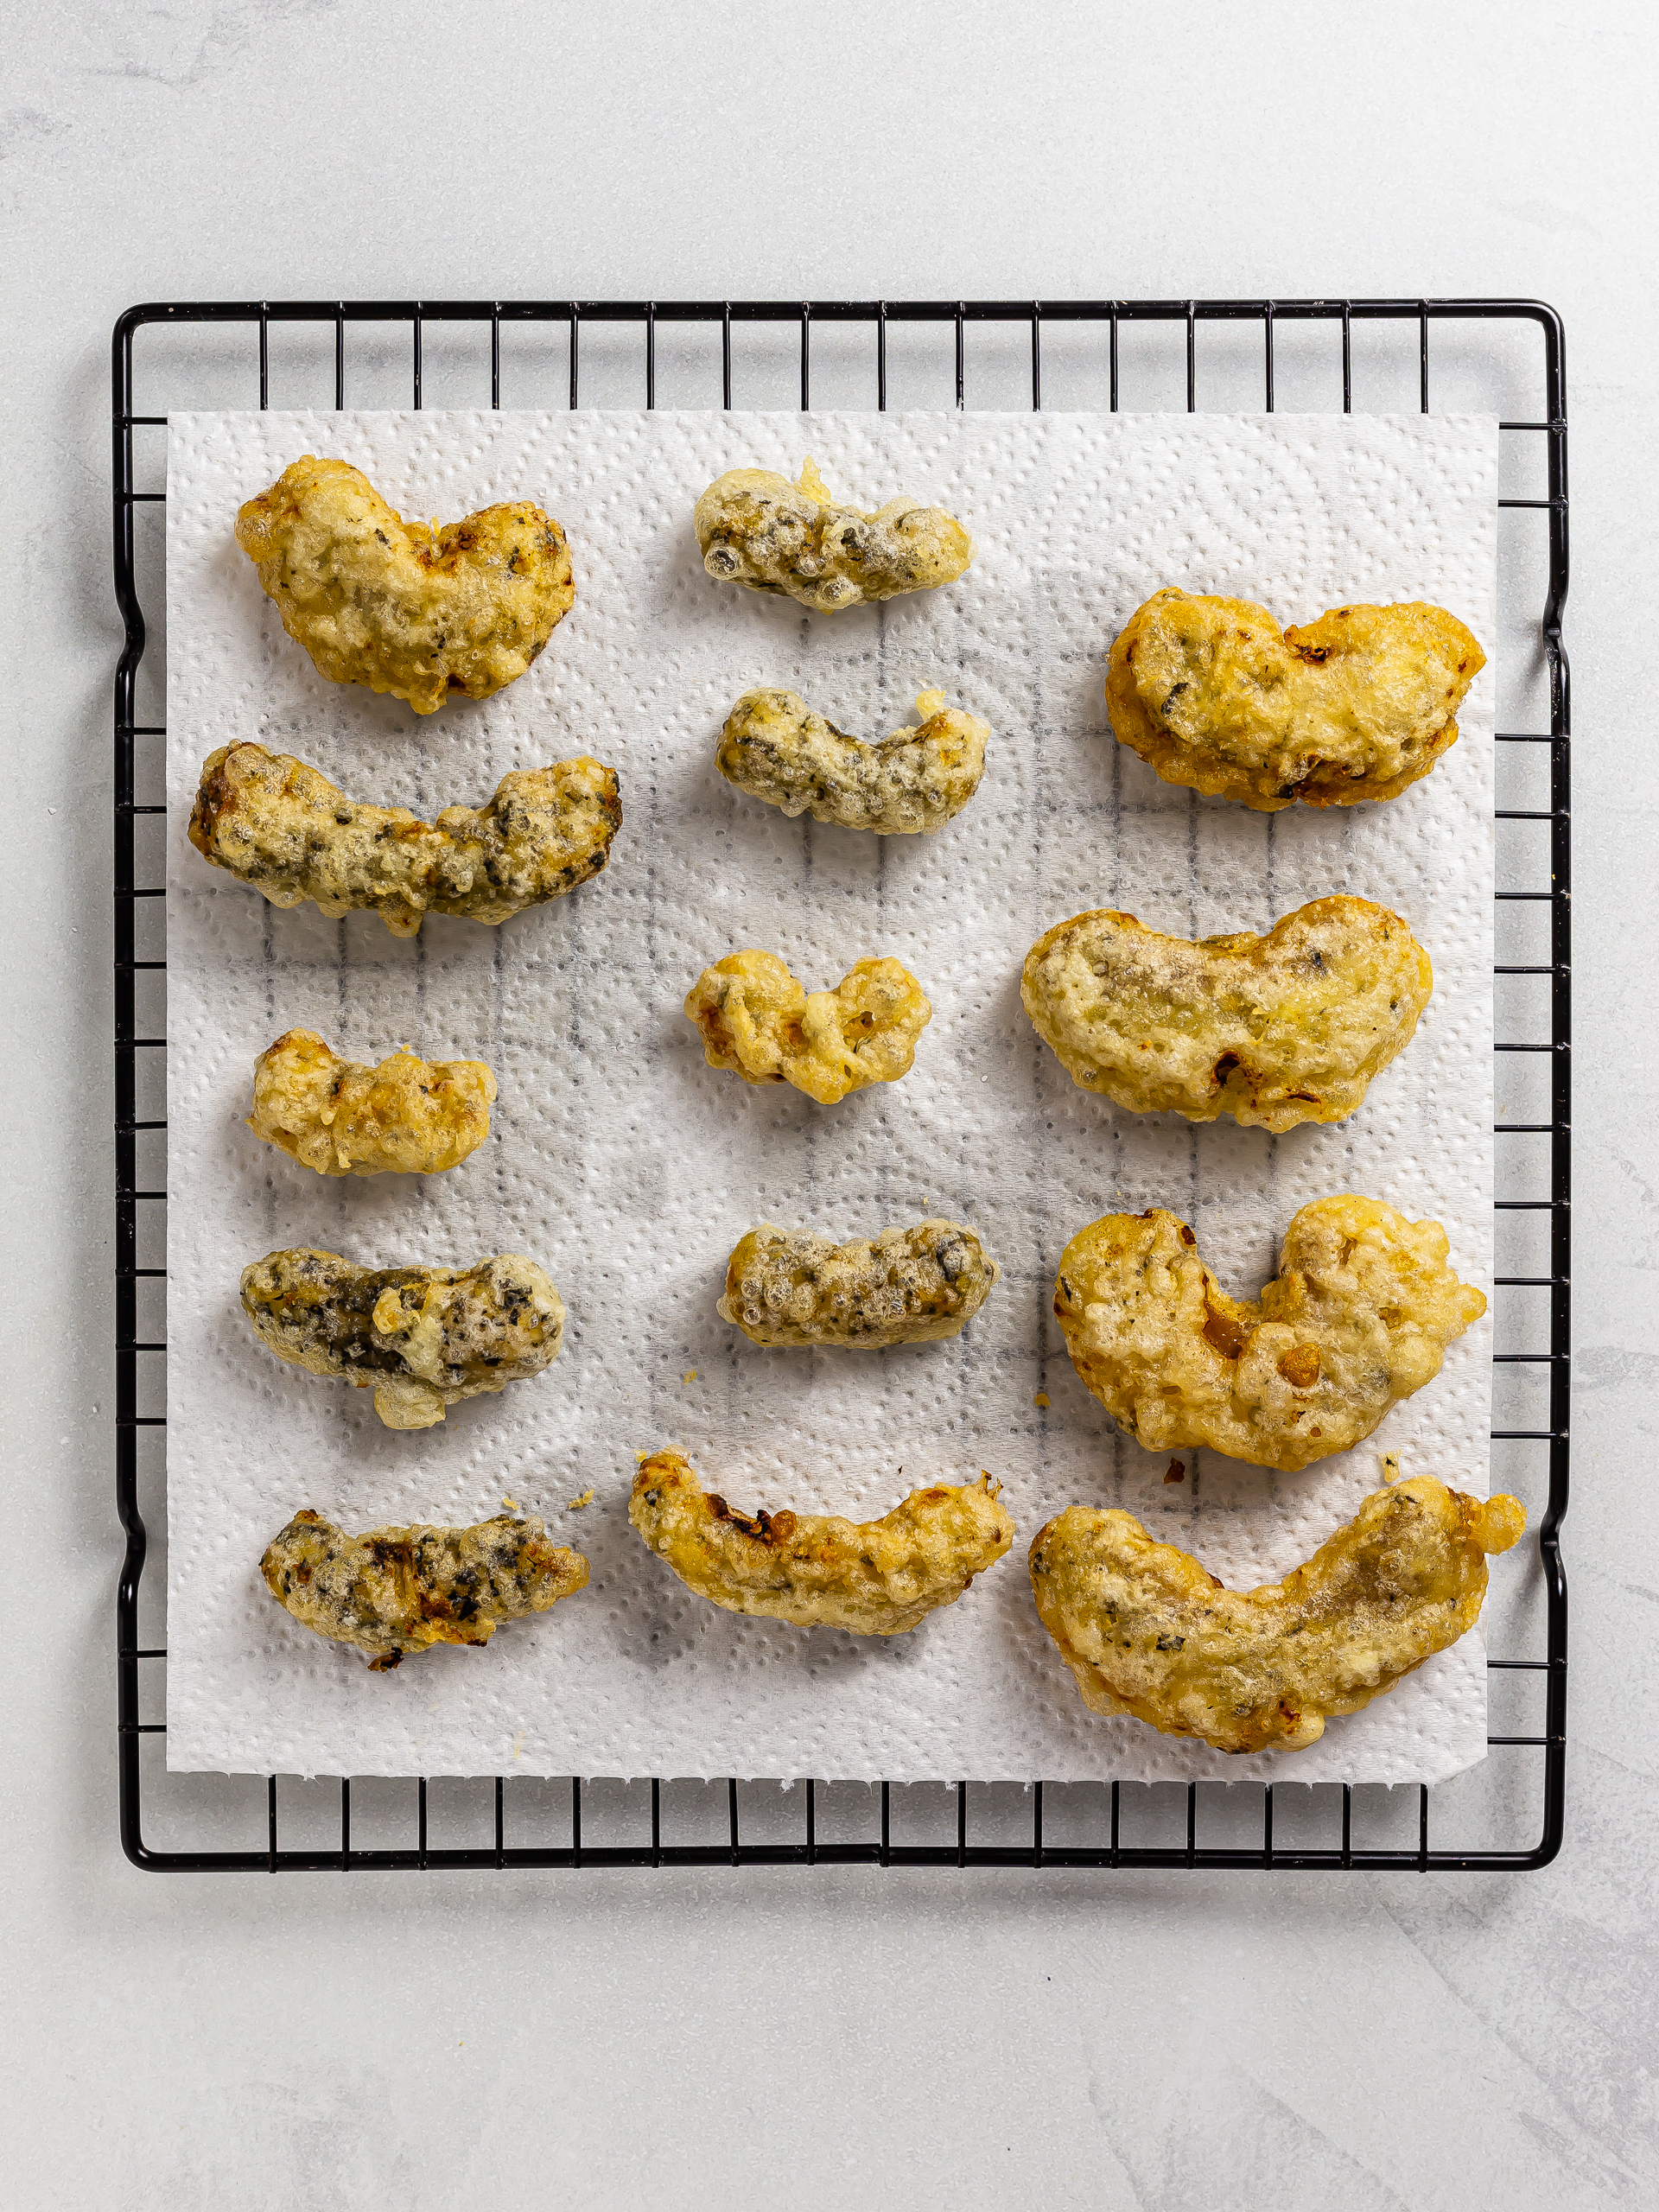 fried vegan ebi tempura draining oil on kitchen paper